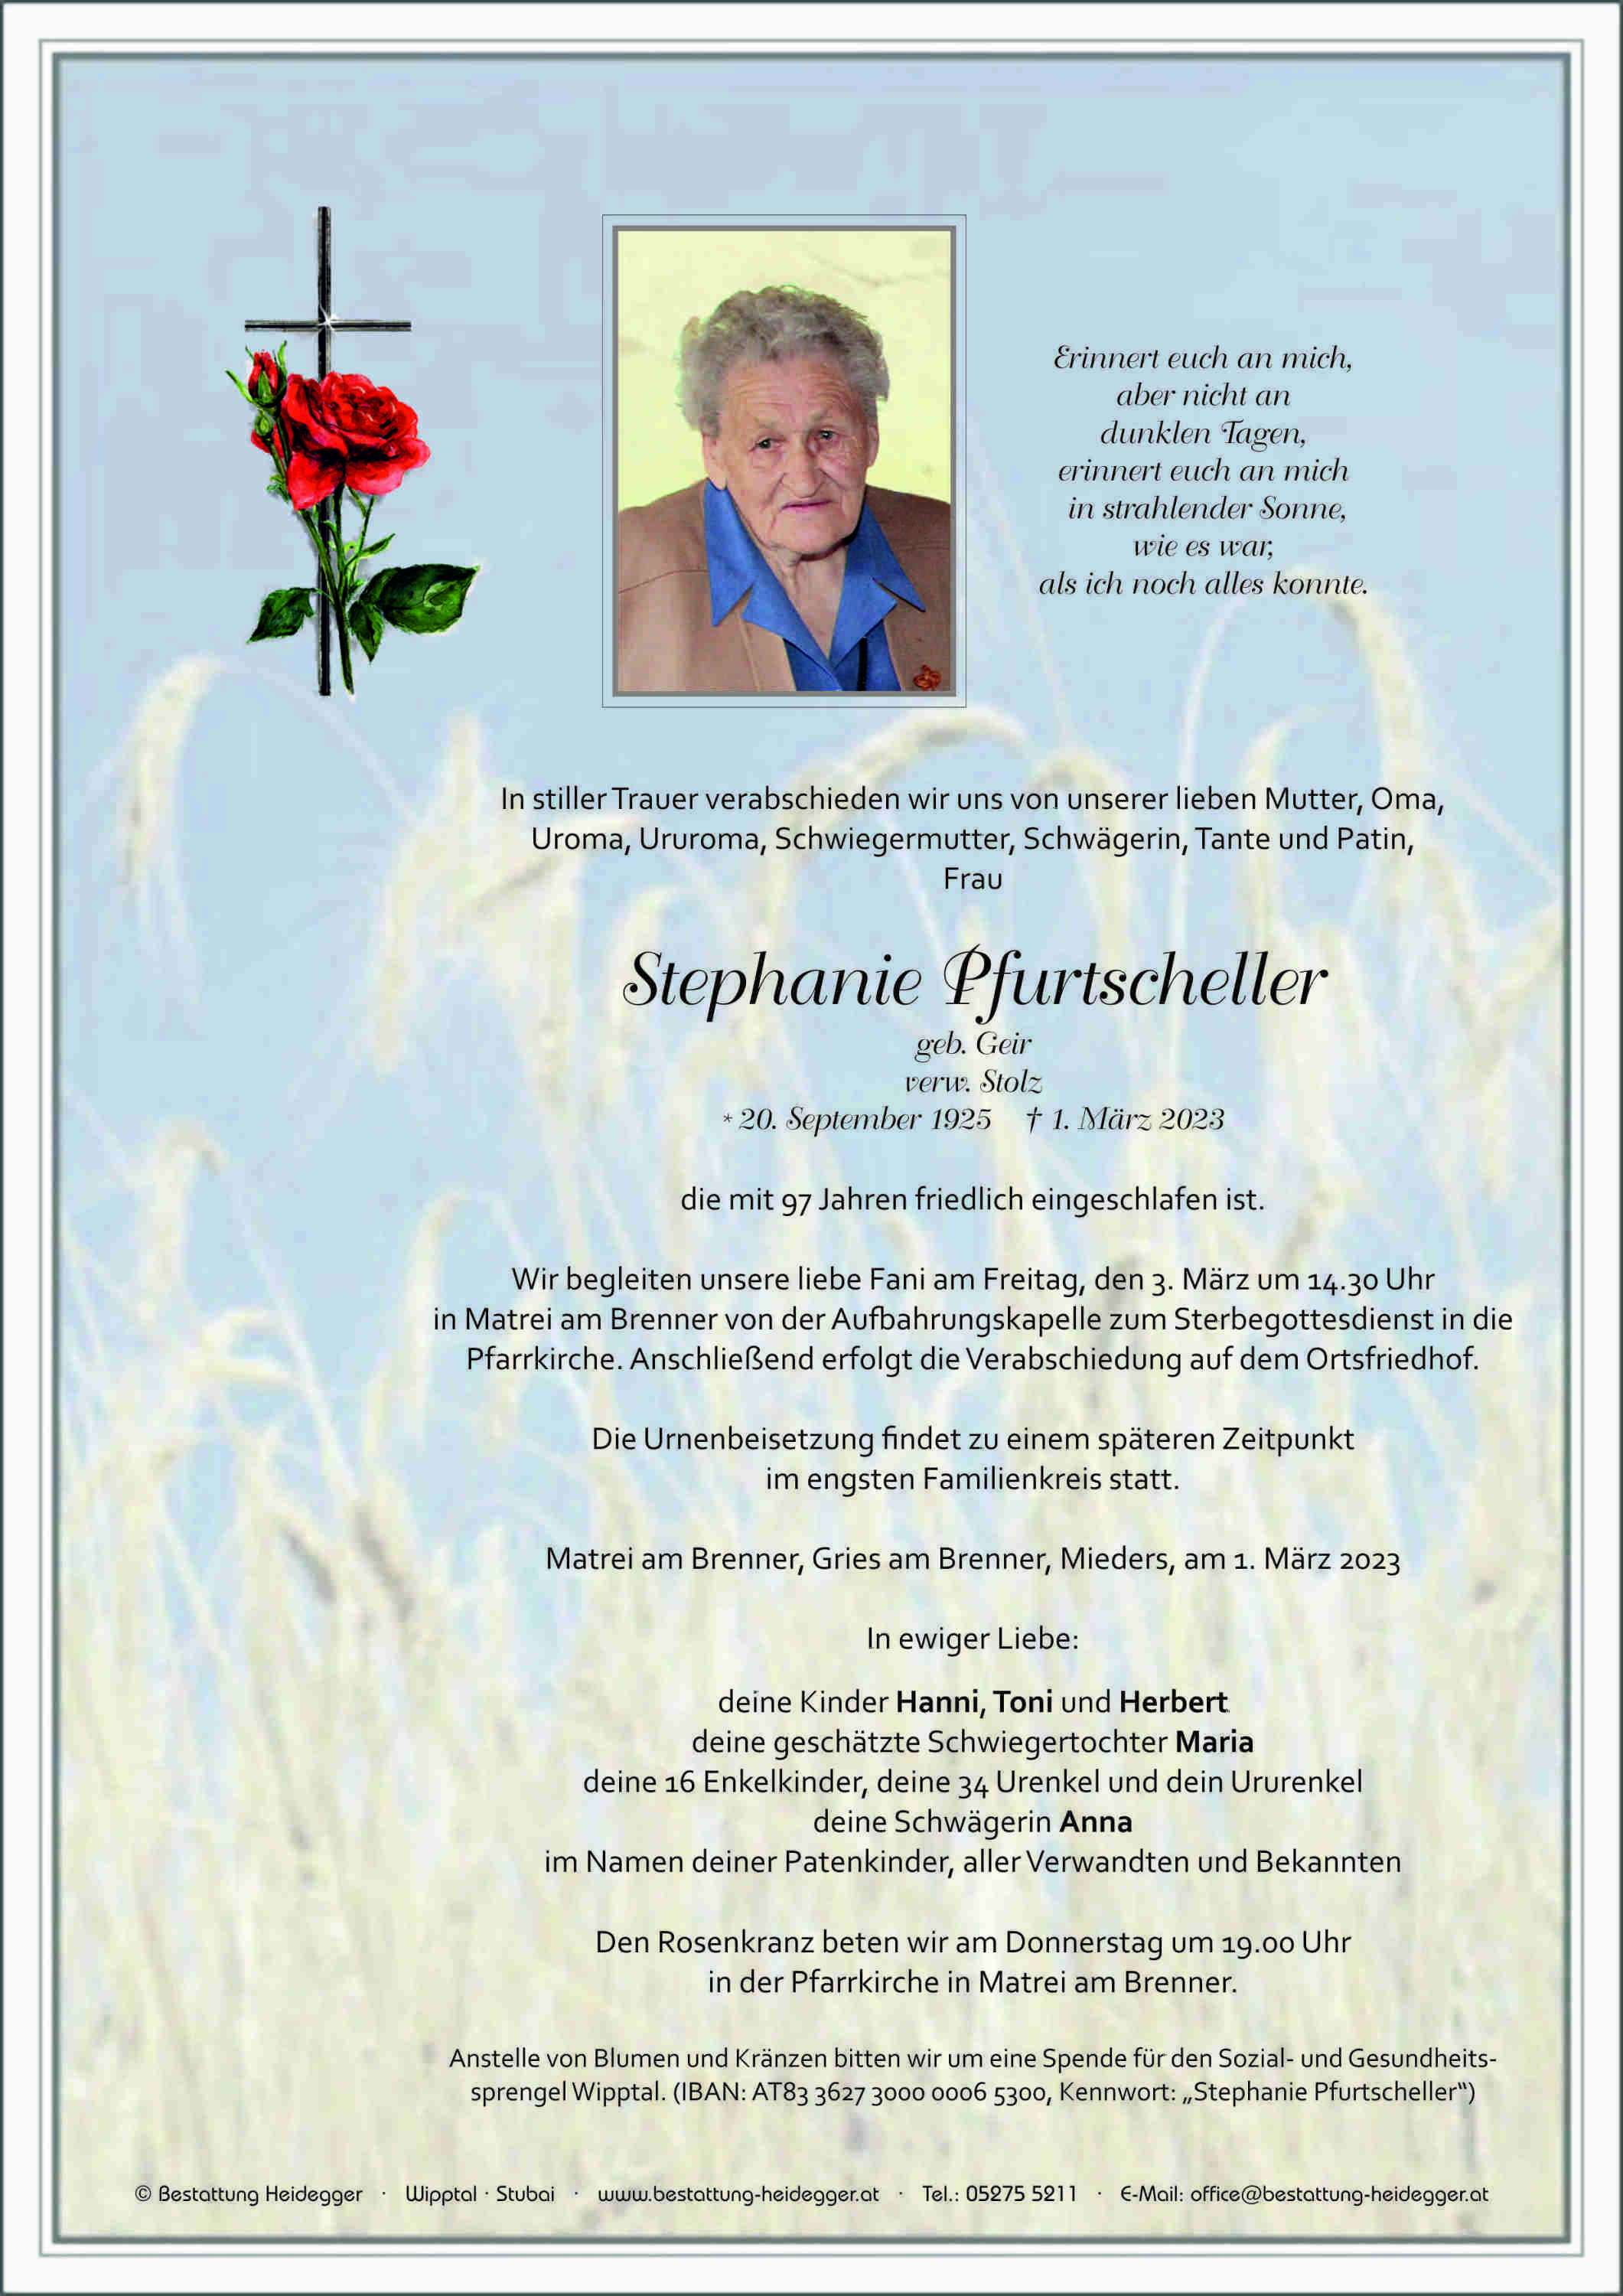 Stephanie Pfurtscheller